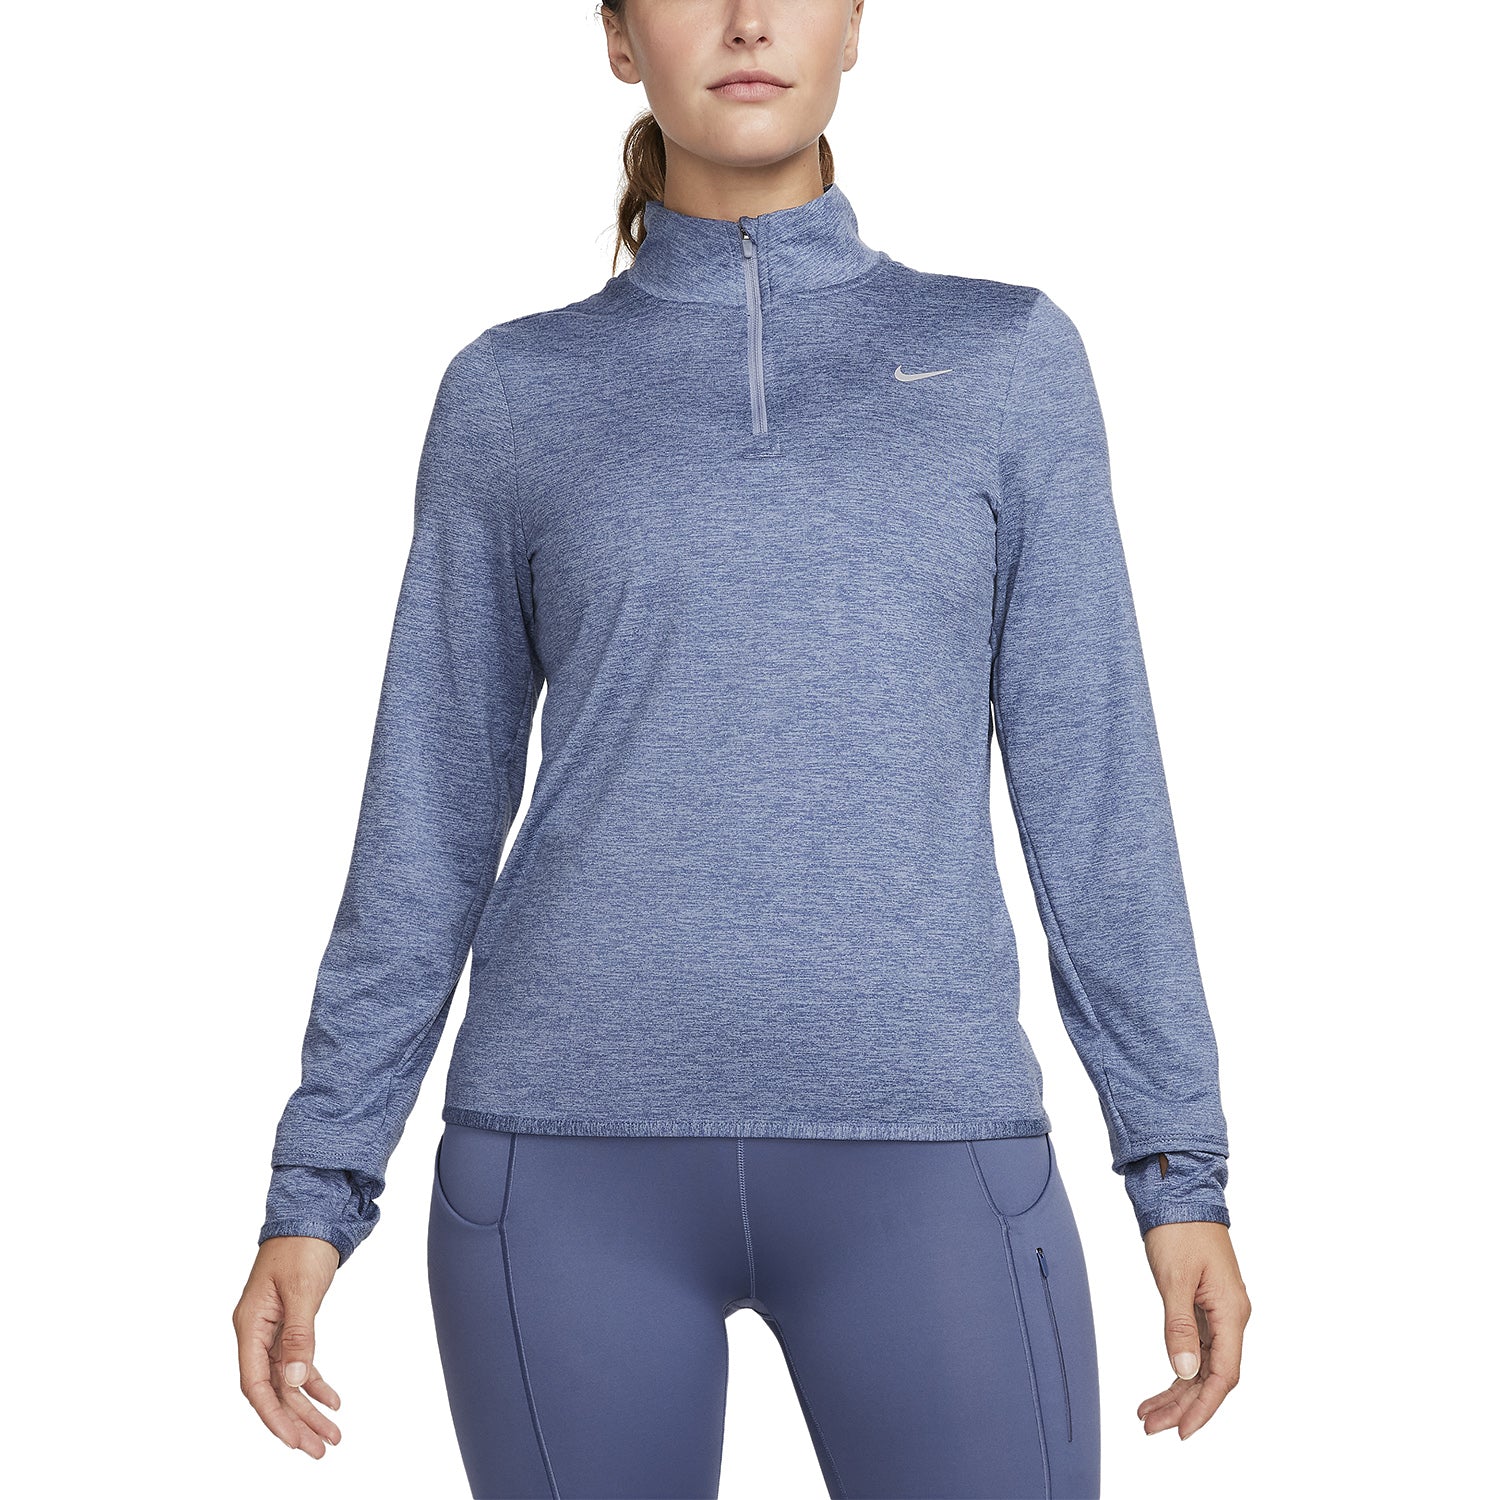 Nike swift element 1/4 zip women's APPAREL - Womens Long Sleeve Tops ASHEN SLATE/REFLECTIVE SILVER